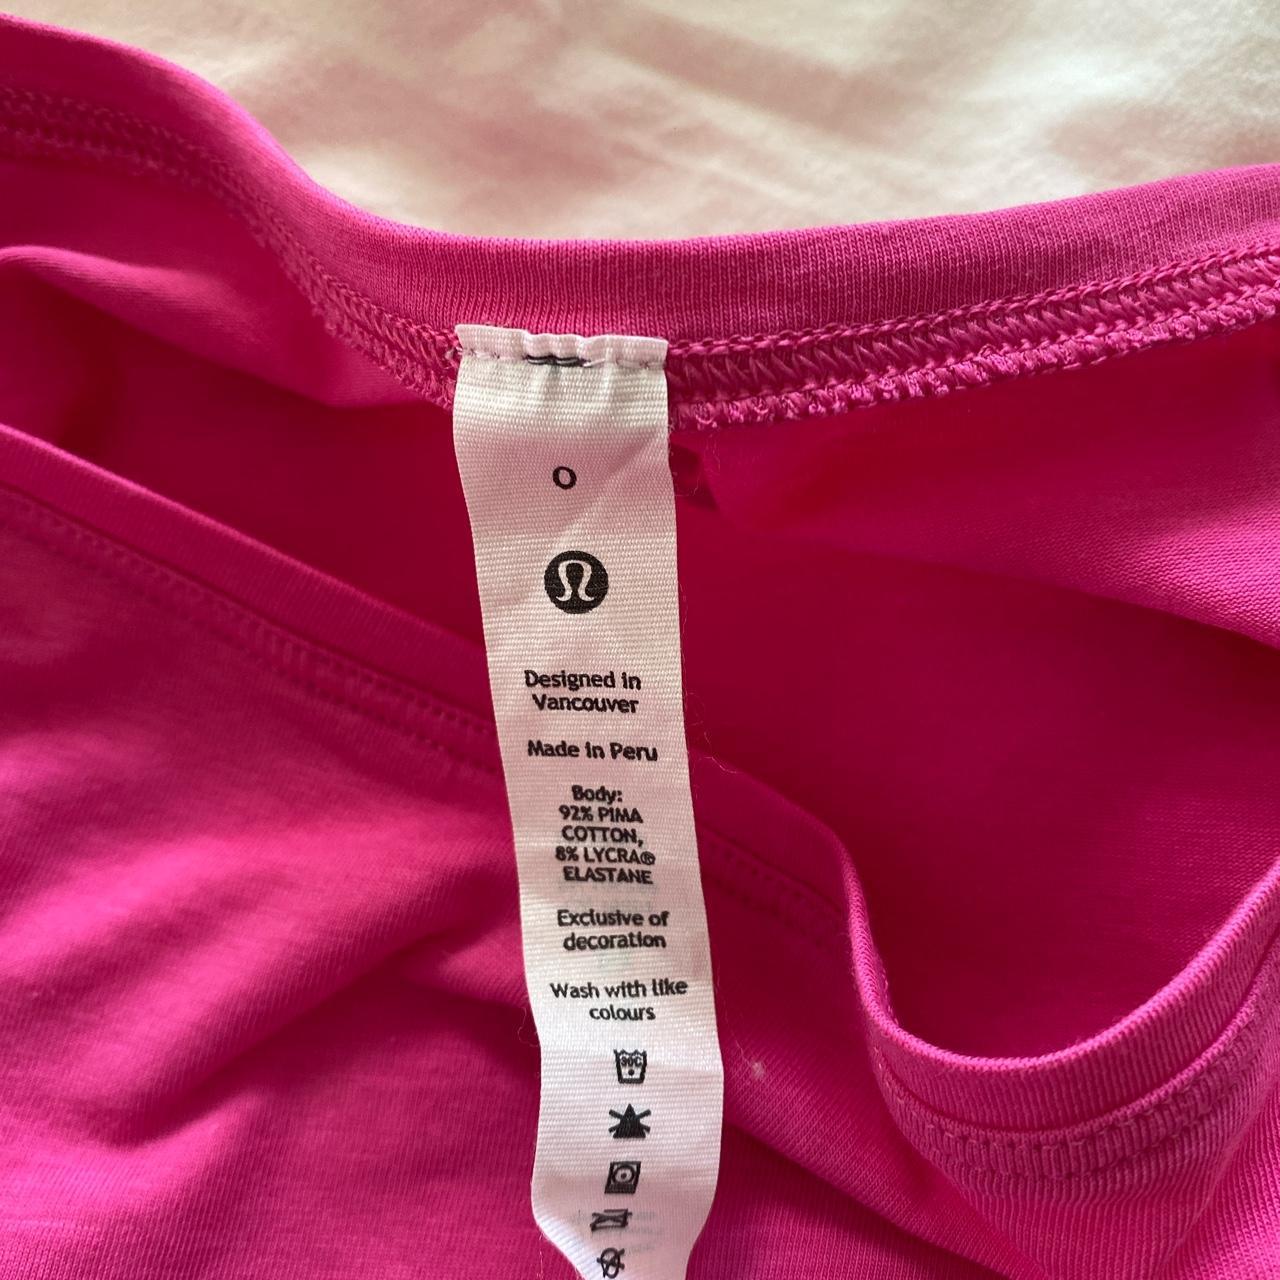 Never worn hot pink Lululemon top. 🩷🩷 The sleeves... - Depop